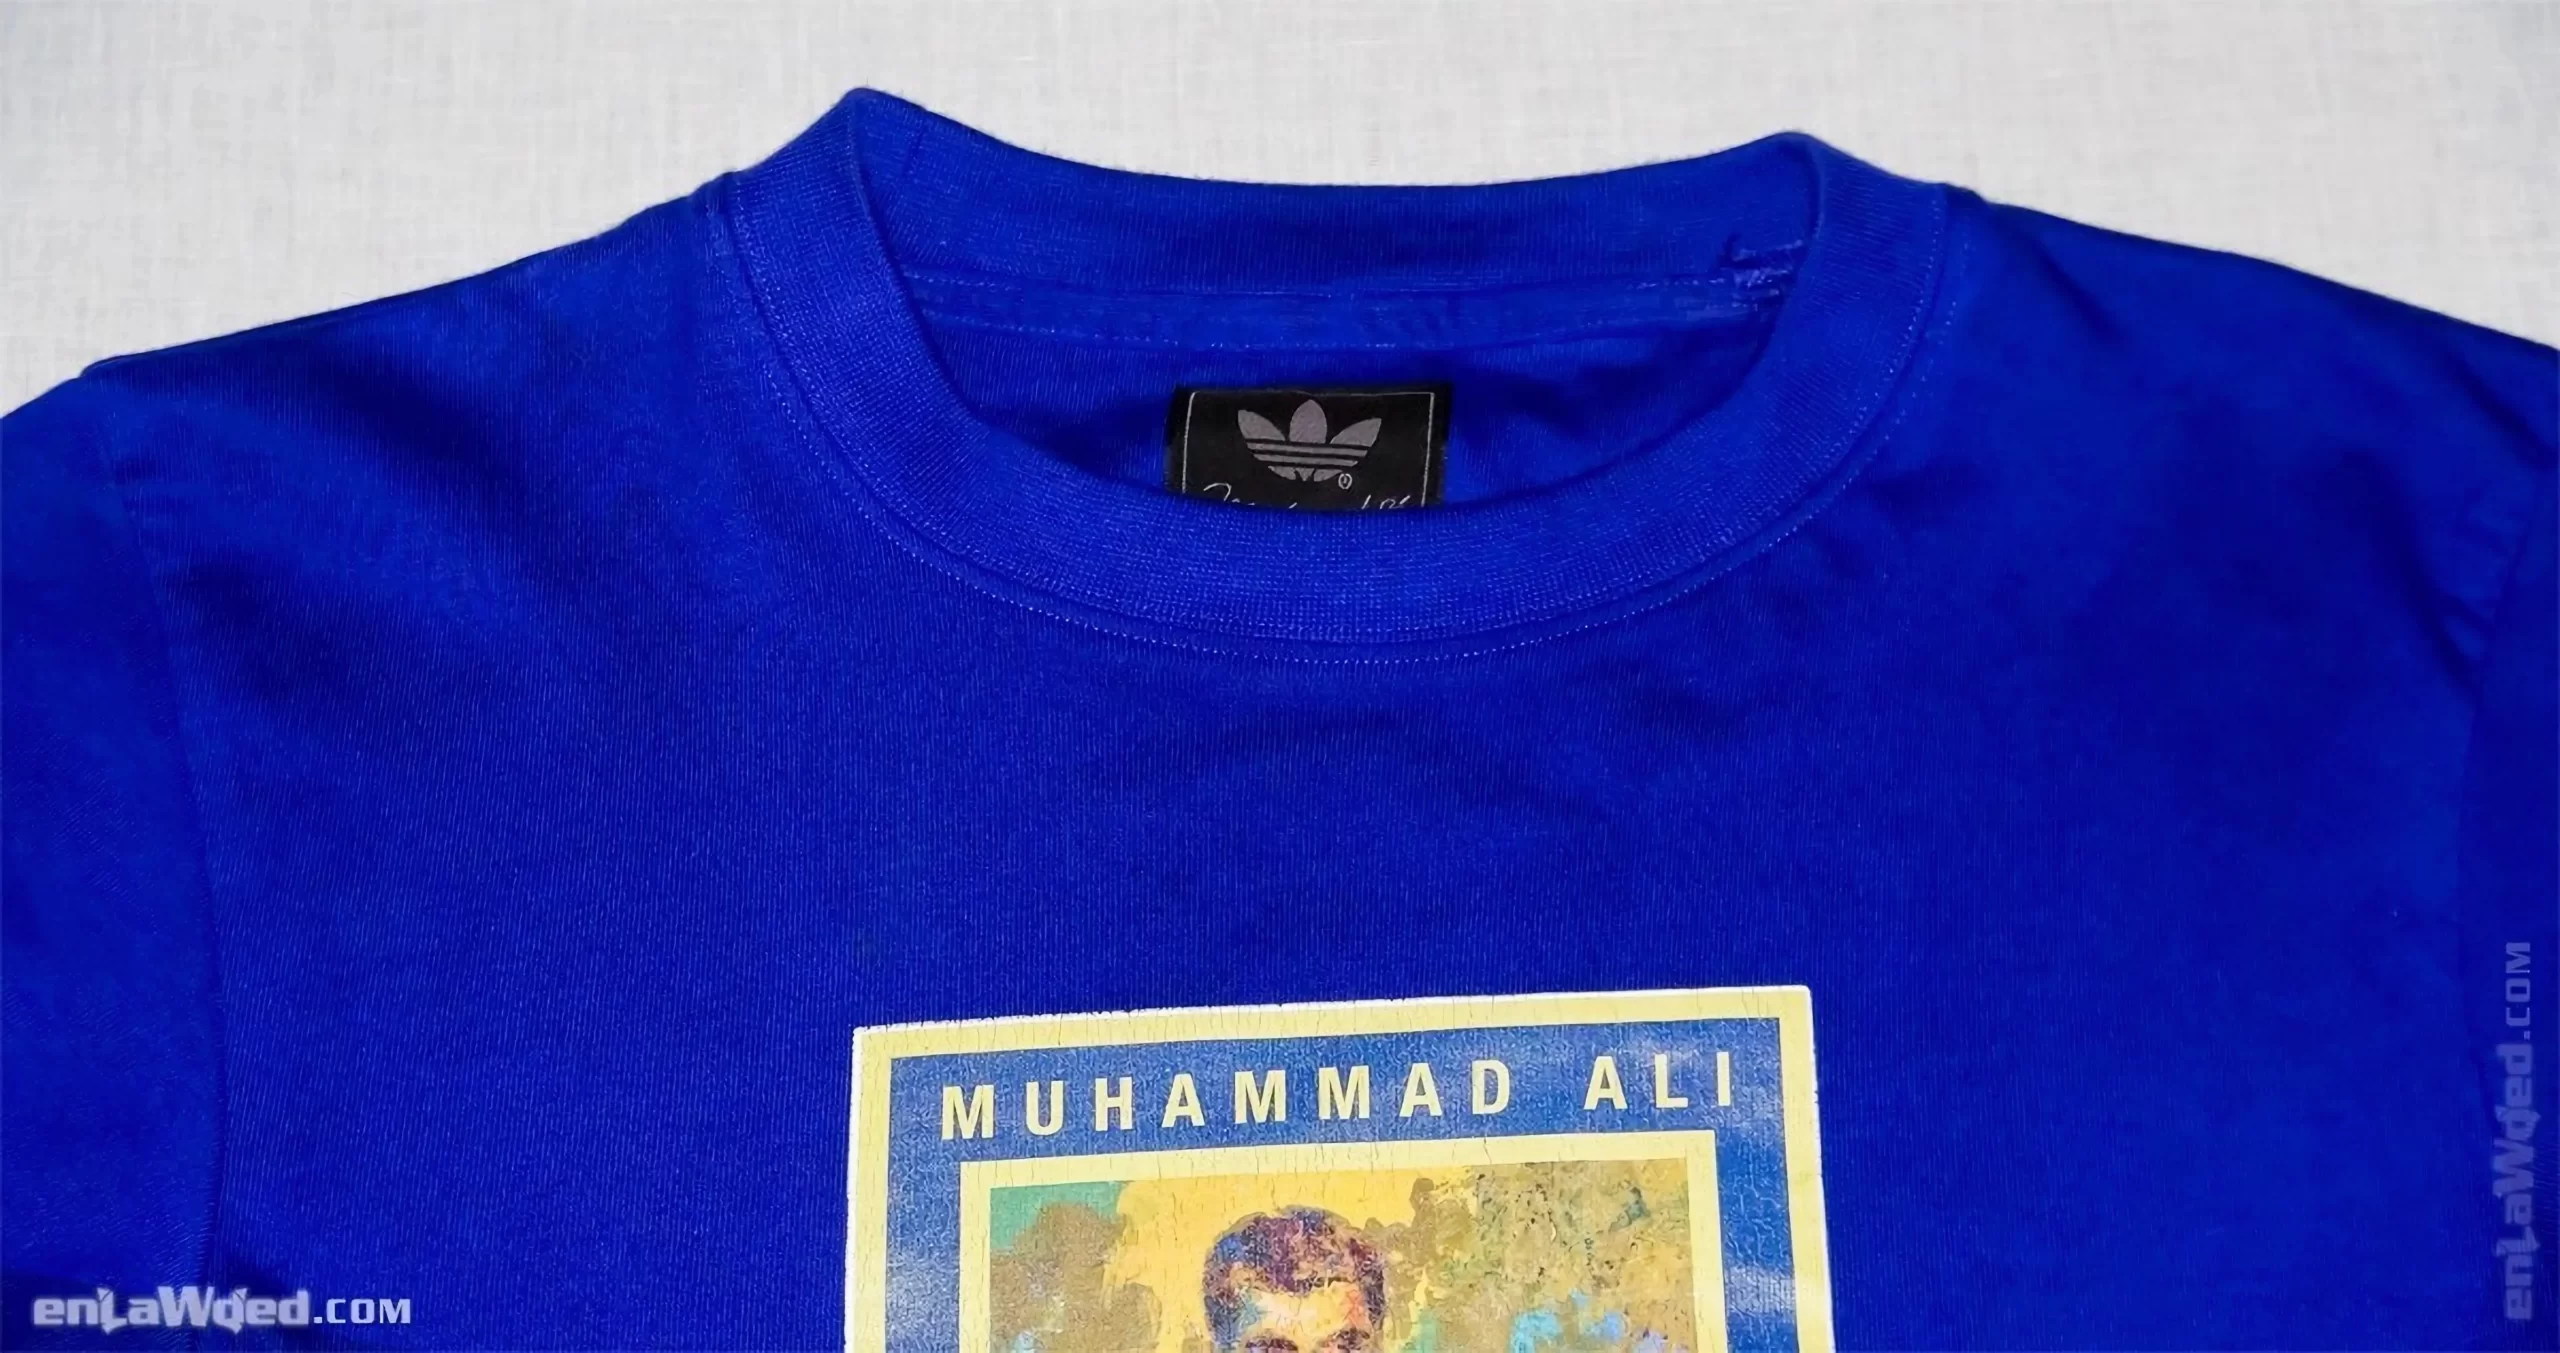 Men’s 2007 Muhammad Ali Respect T-Shirt by Adidas: Tawdry (EnLawded.com file #lmc5rhklq125b8nmou)